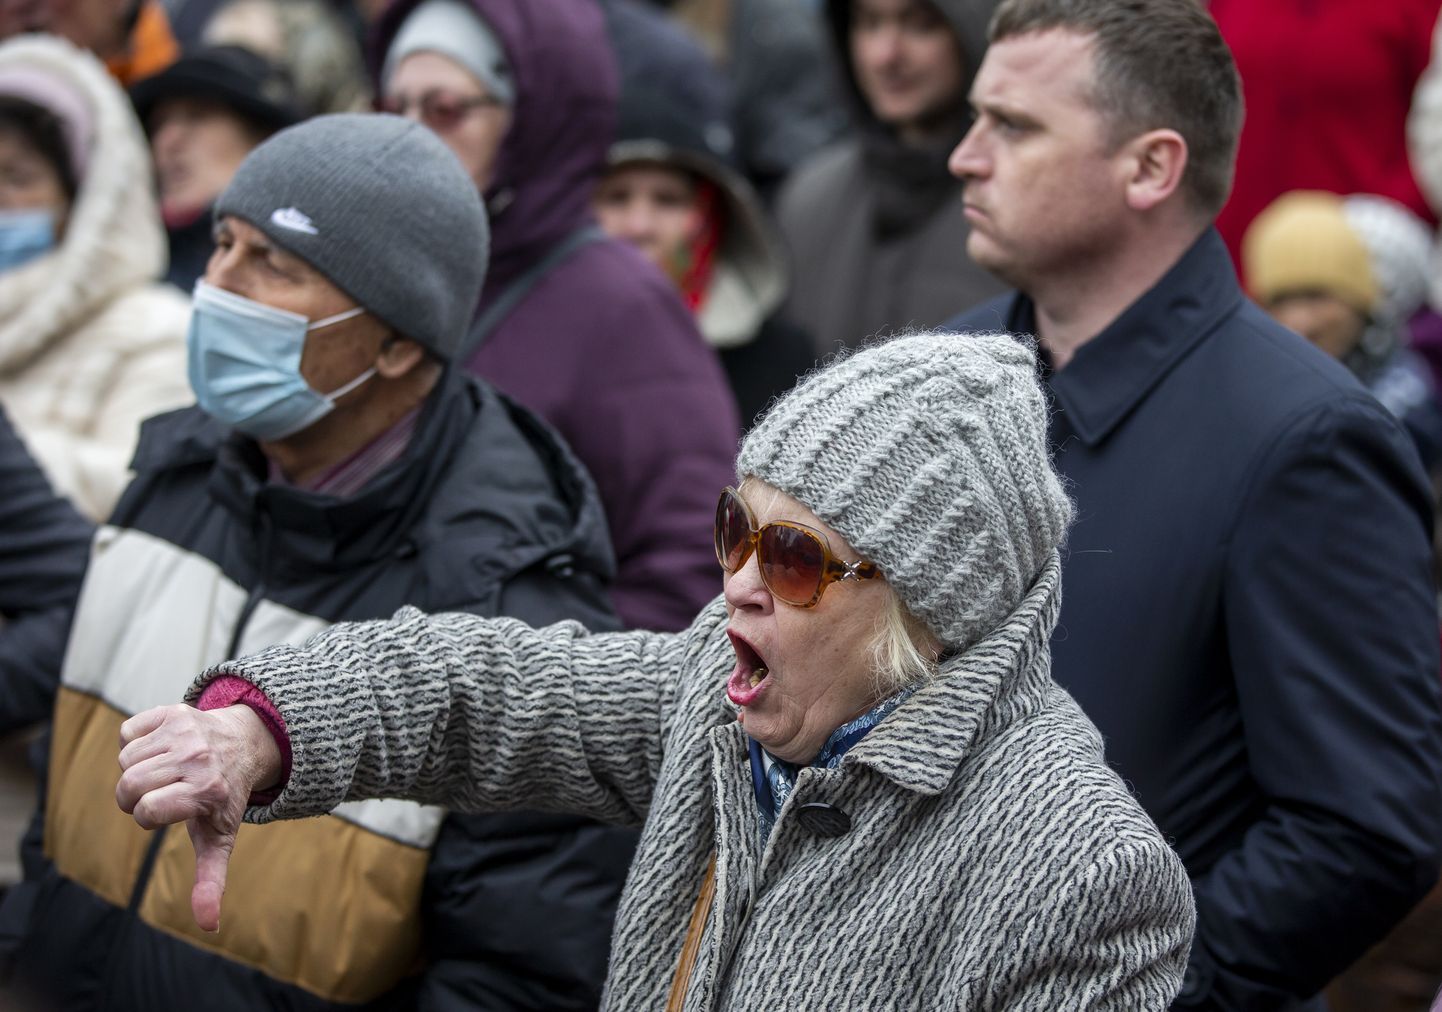 В марте в Молдове вспыхнули антиправительственные демонстрации. На прошлой неделе молдавская полиция задержала членов промосковской сети, целью которой была дестабилизация ситуации на митинге.